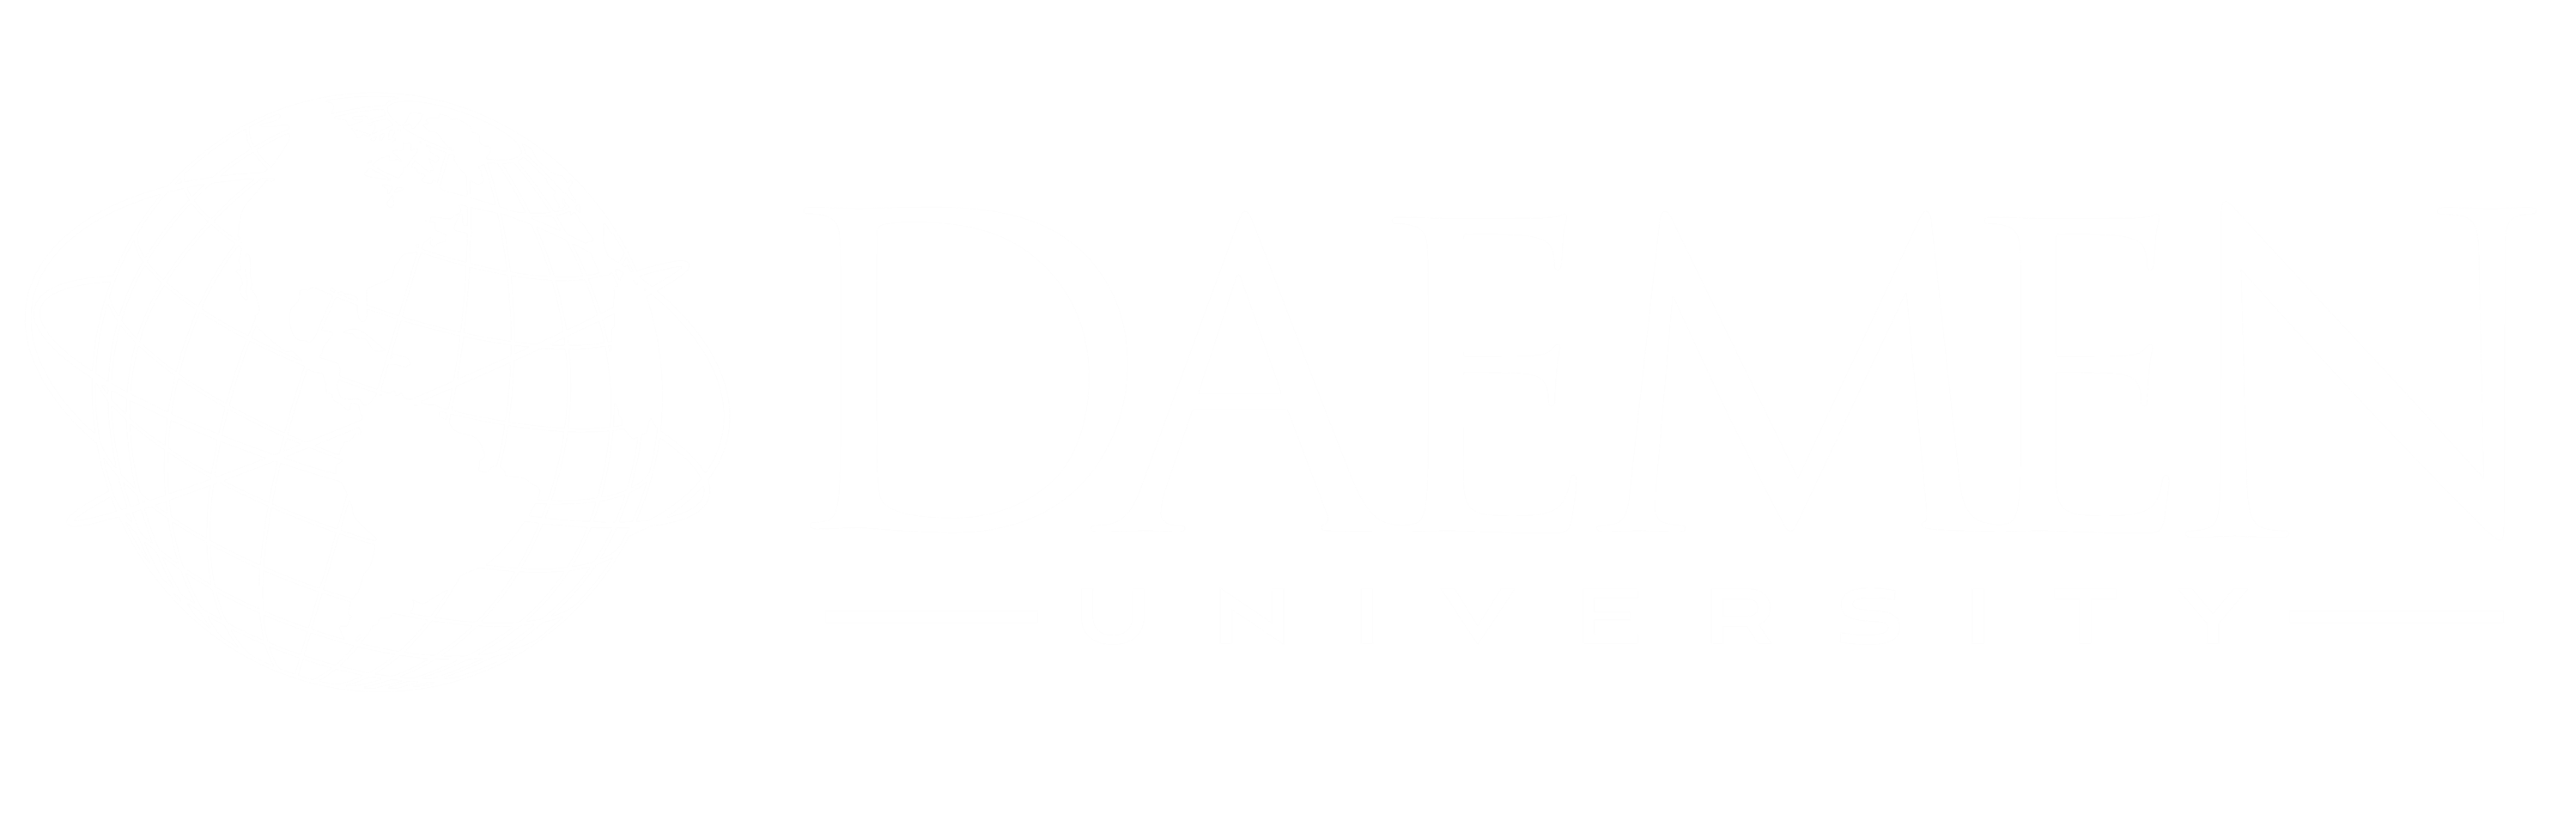 Daemen University Logo Image.